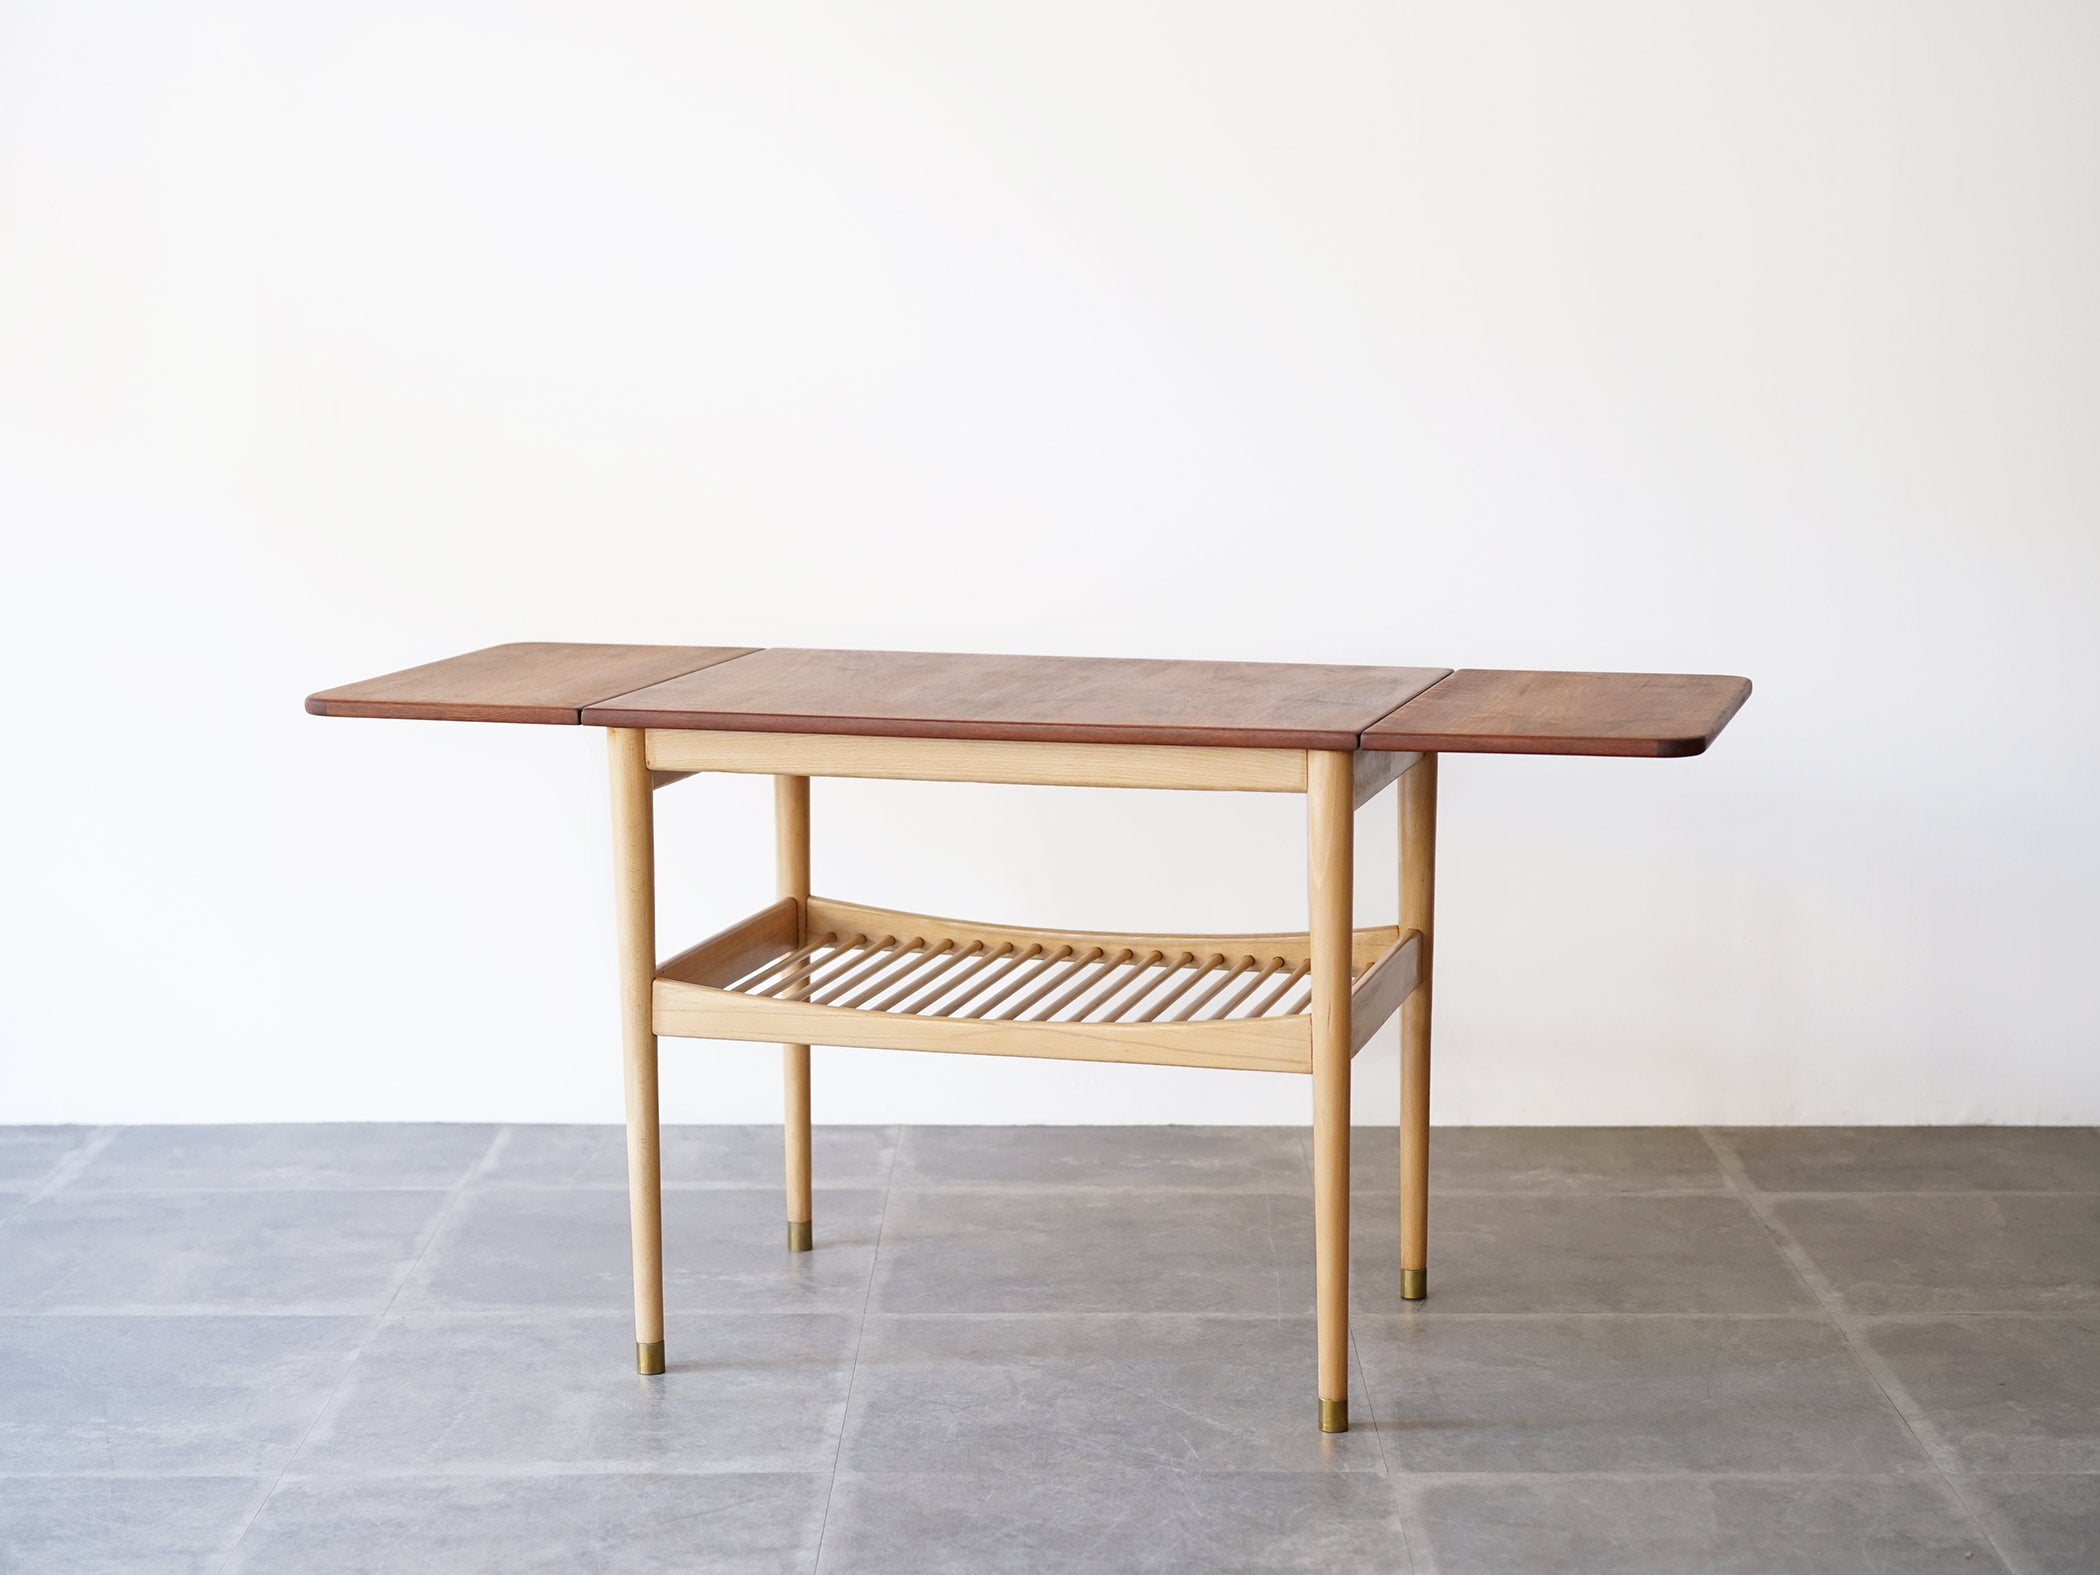 フィン・ユールの両翼延長式のコーヒーテーブル Finn Juhl coffee table with flip-down leaves Anton Kildeberg 北欧デザインのセンターテーブルの両端を長く延長することができる